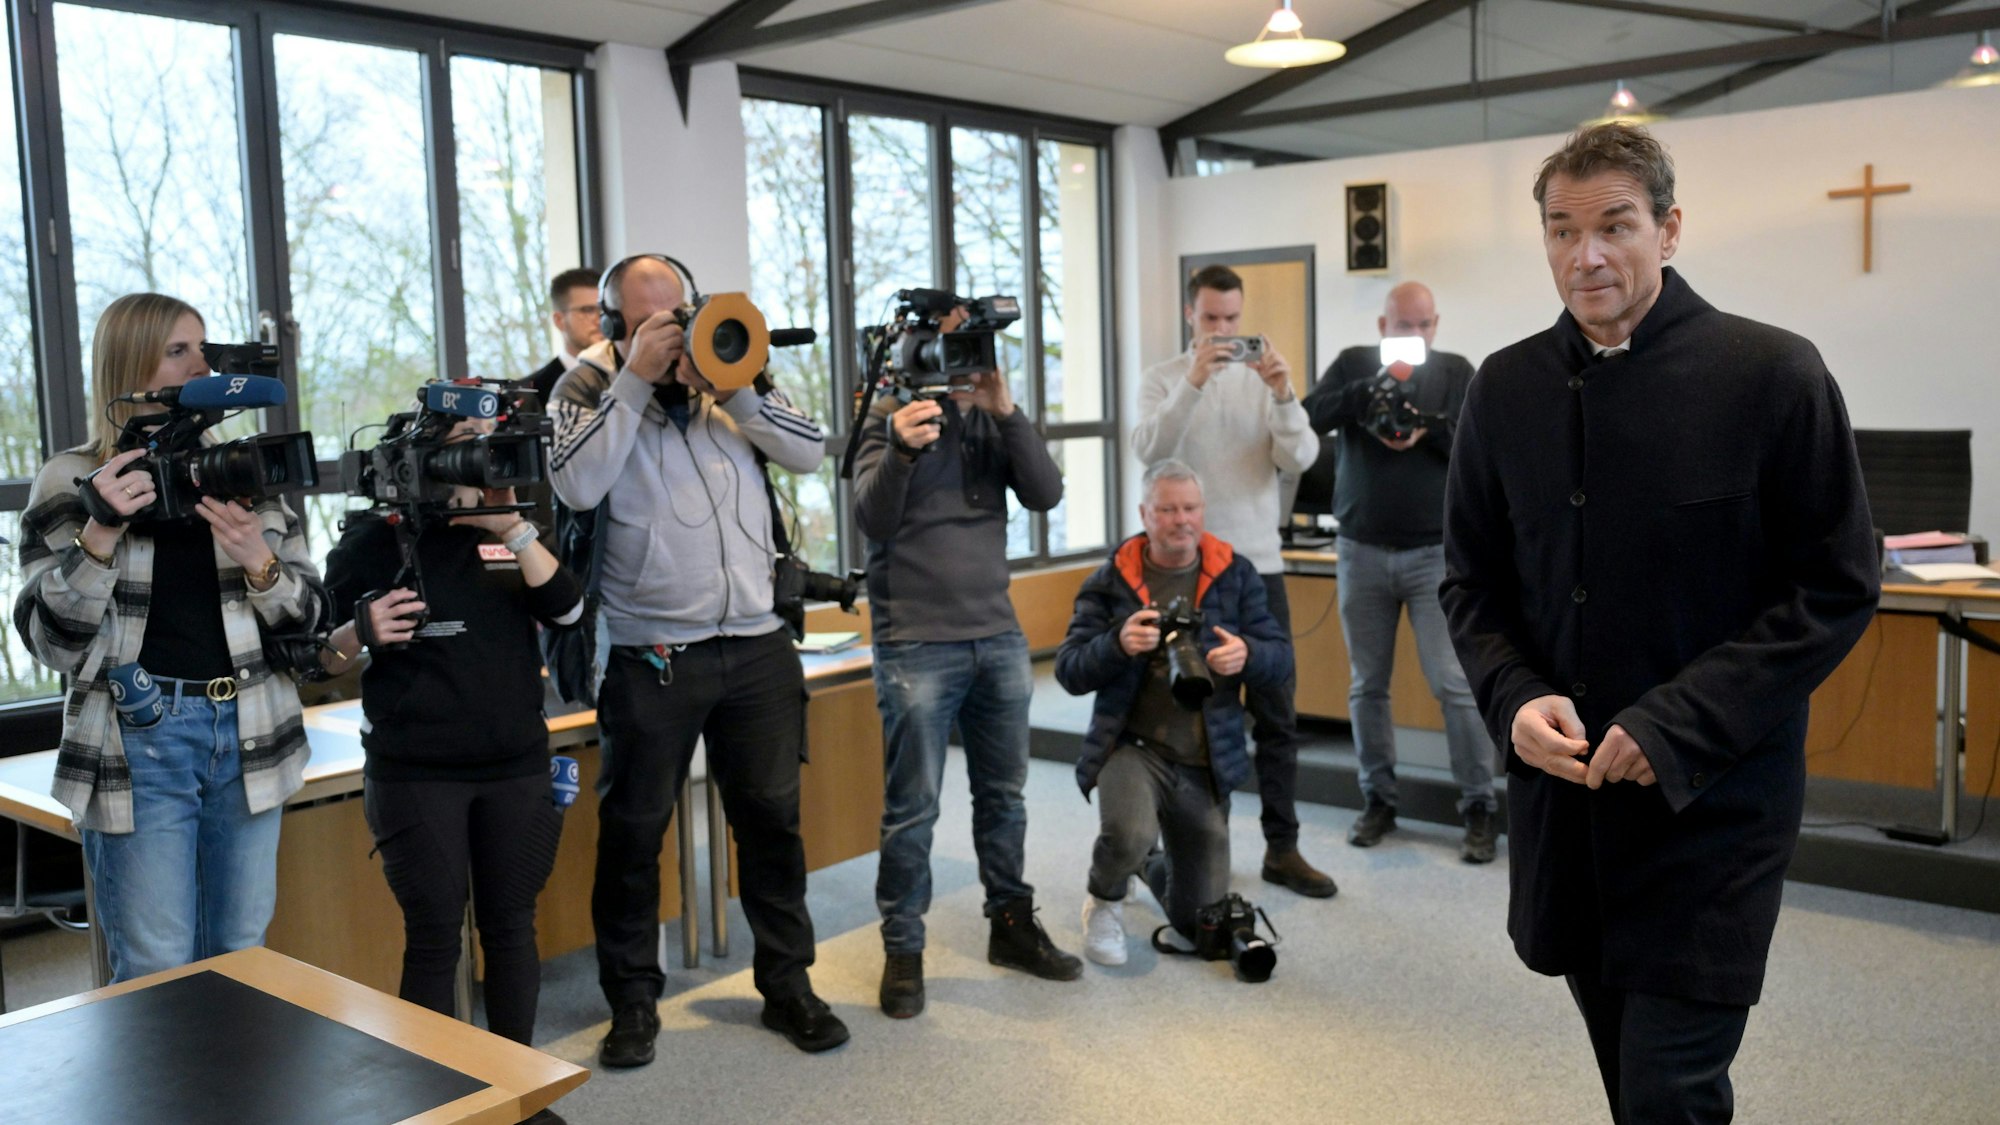 Der wegen Hausfriedensbruch und Sachbeschädigung angeklagte ehemalige Fußball-Nationaltorwart Jens Lehmann geht zu Prozessbeginn gegen ihn an den wartenden Journalisten vorbei, um den Reporter der Bild-Zeitung zu suchen.